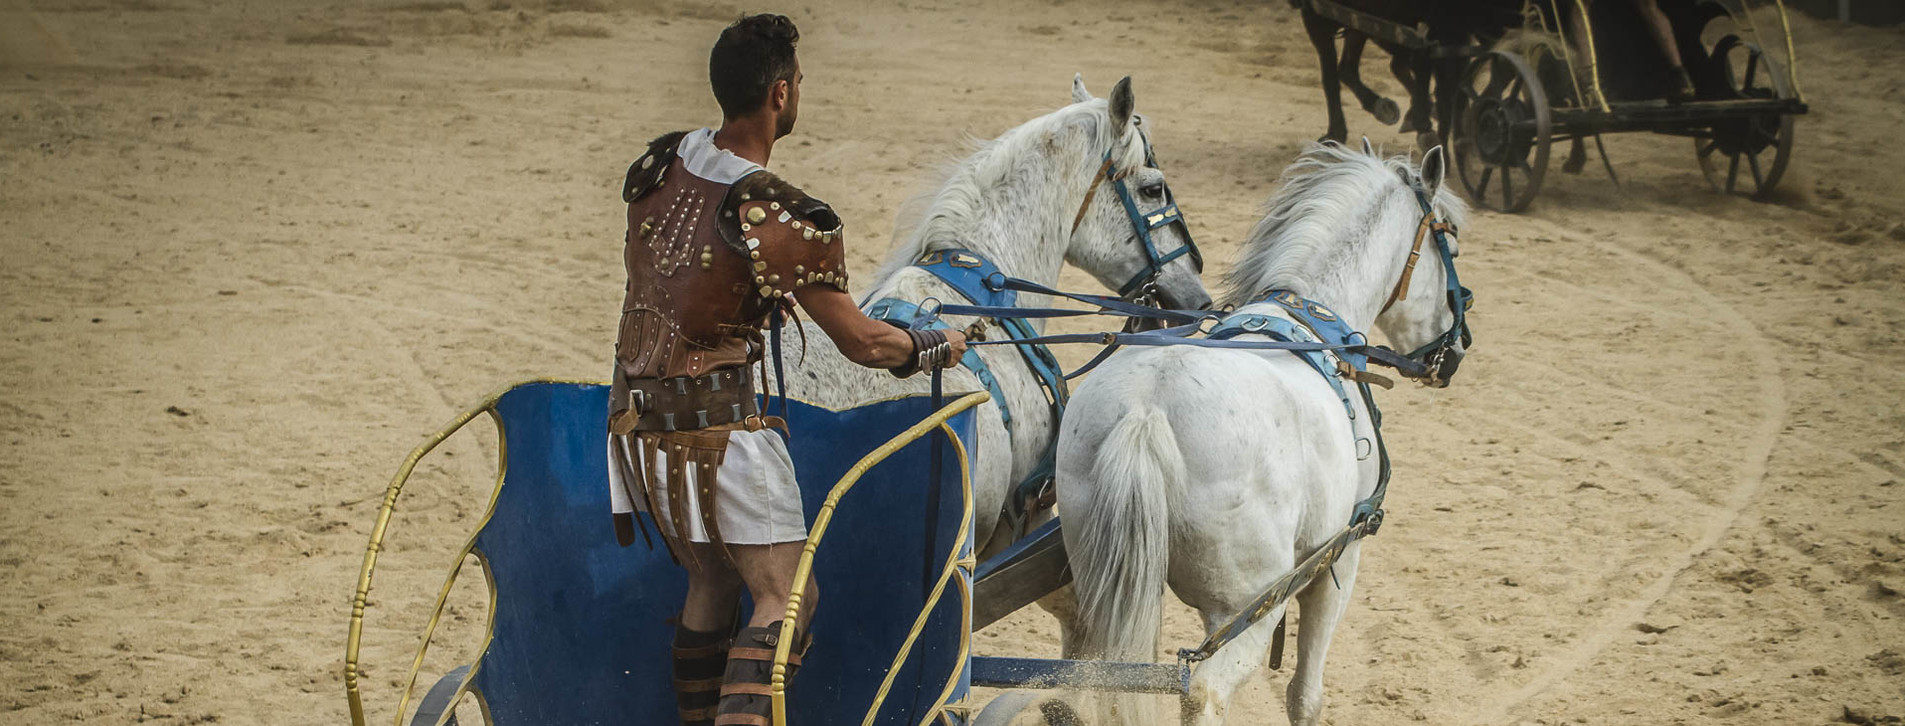 Фото 1 - Управление древней колесницей